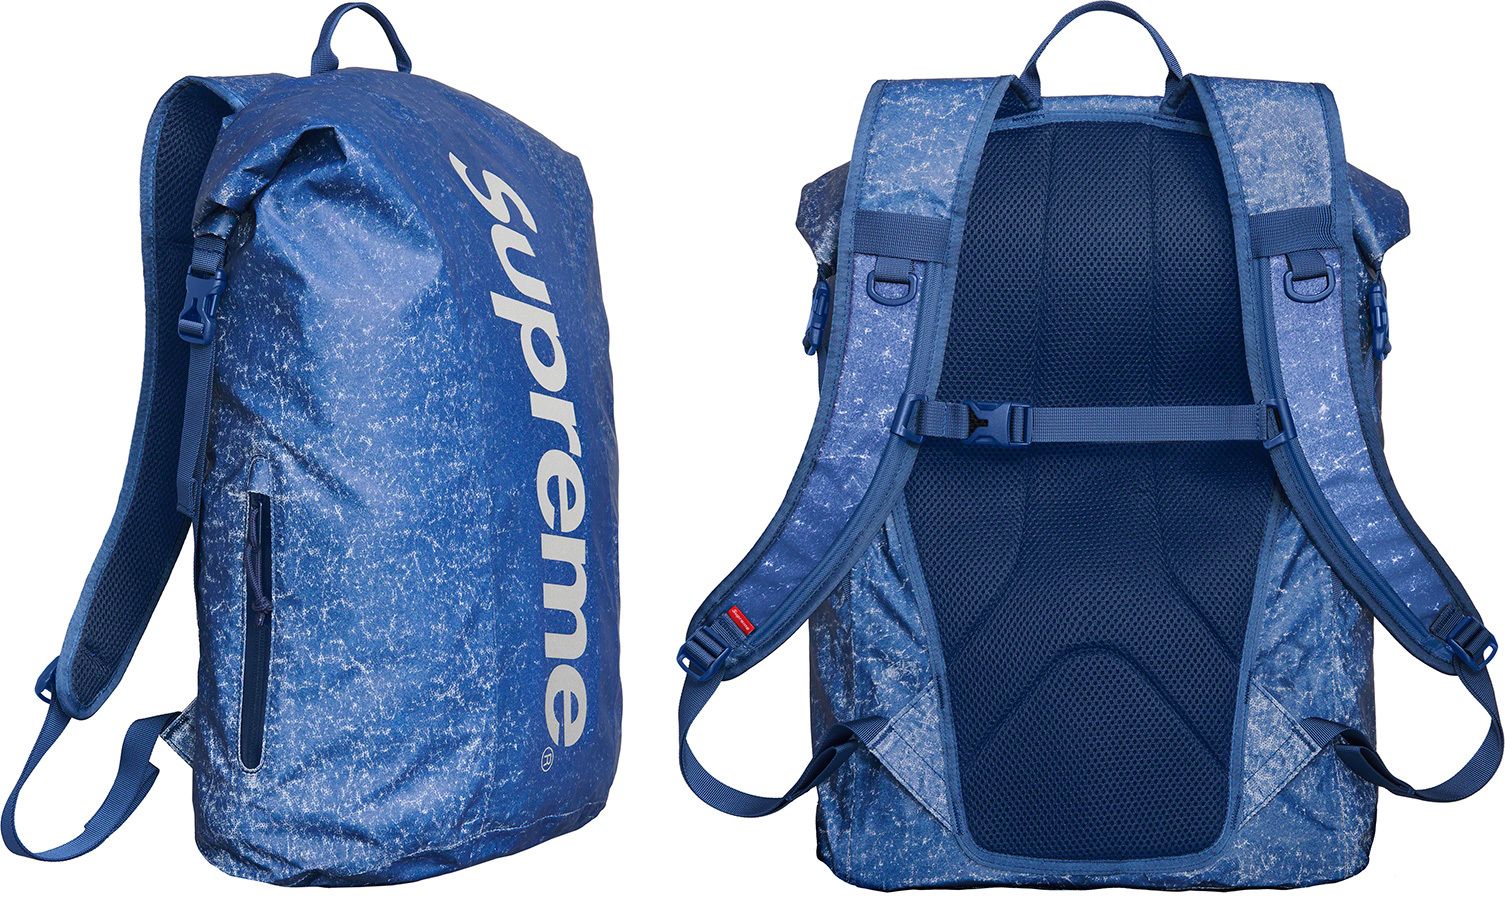 AprilroofsSupreme Waterproof Backpack R-1